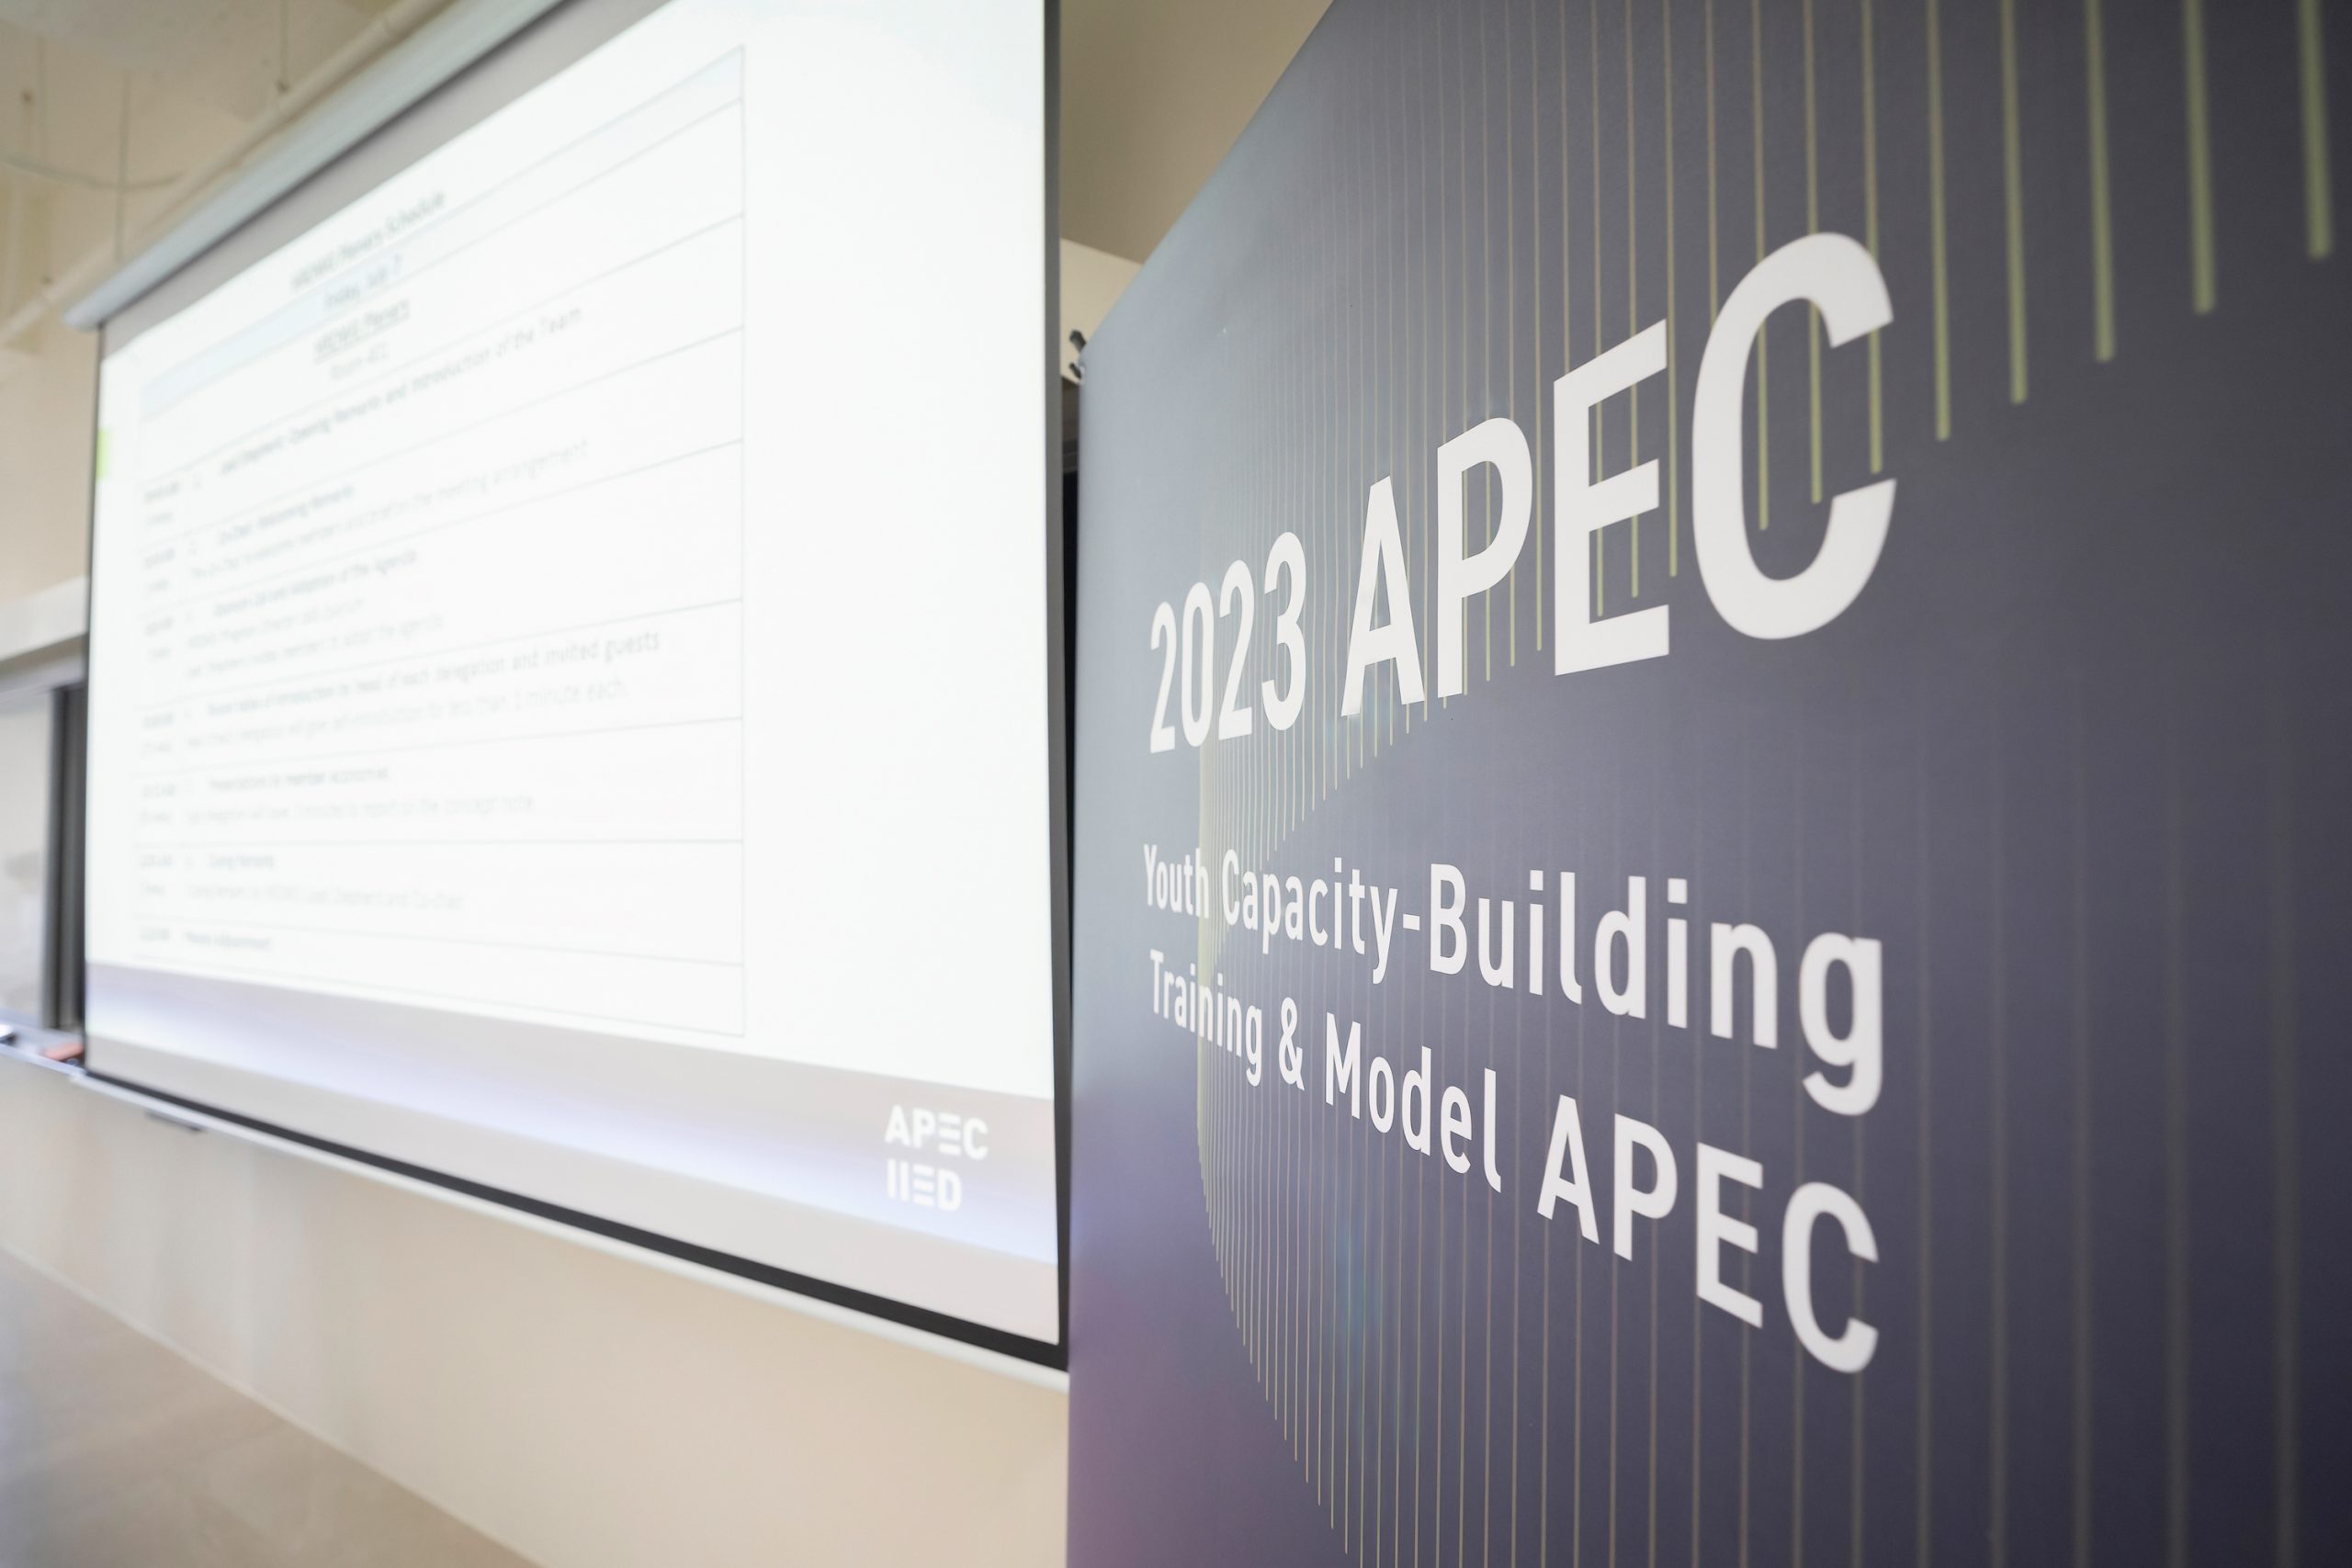 #EntrevistasCAMSantiago: Claudio F. Osses Garrido y su participación en «APEC Youth Capacity-Building Training & Model APEC» en Taipéi